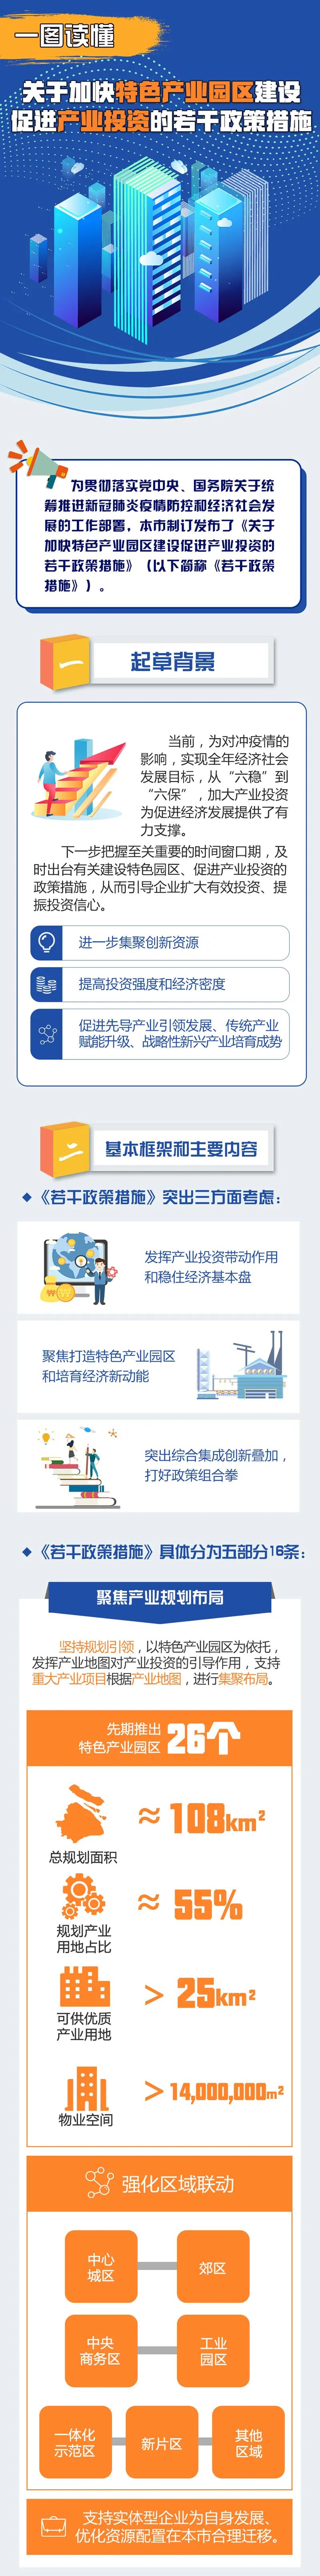 上海加快特色产业园区建设 设立4个1000亿支持政策